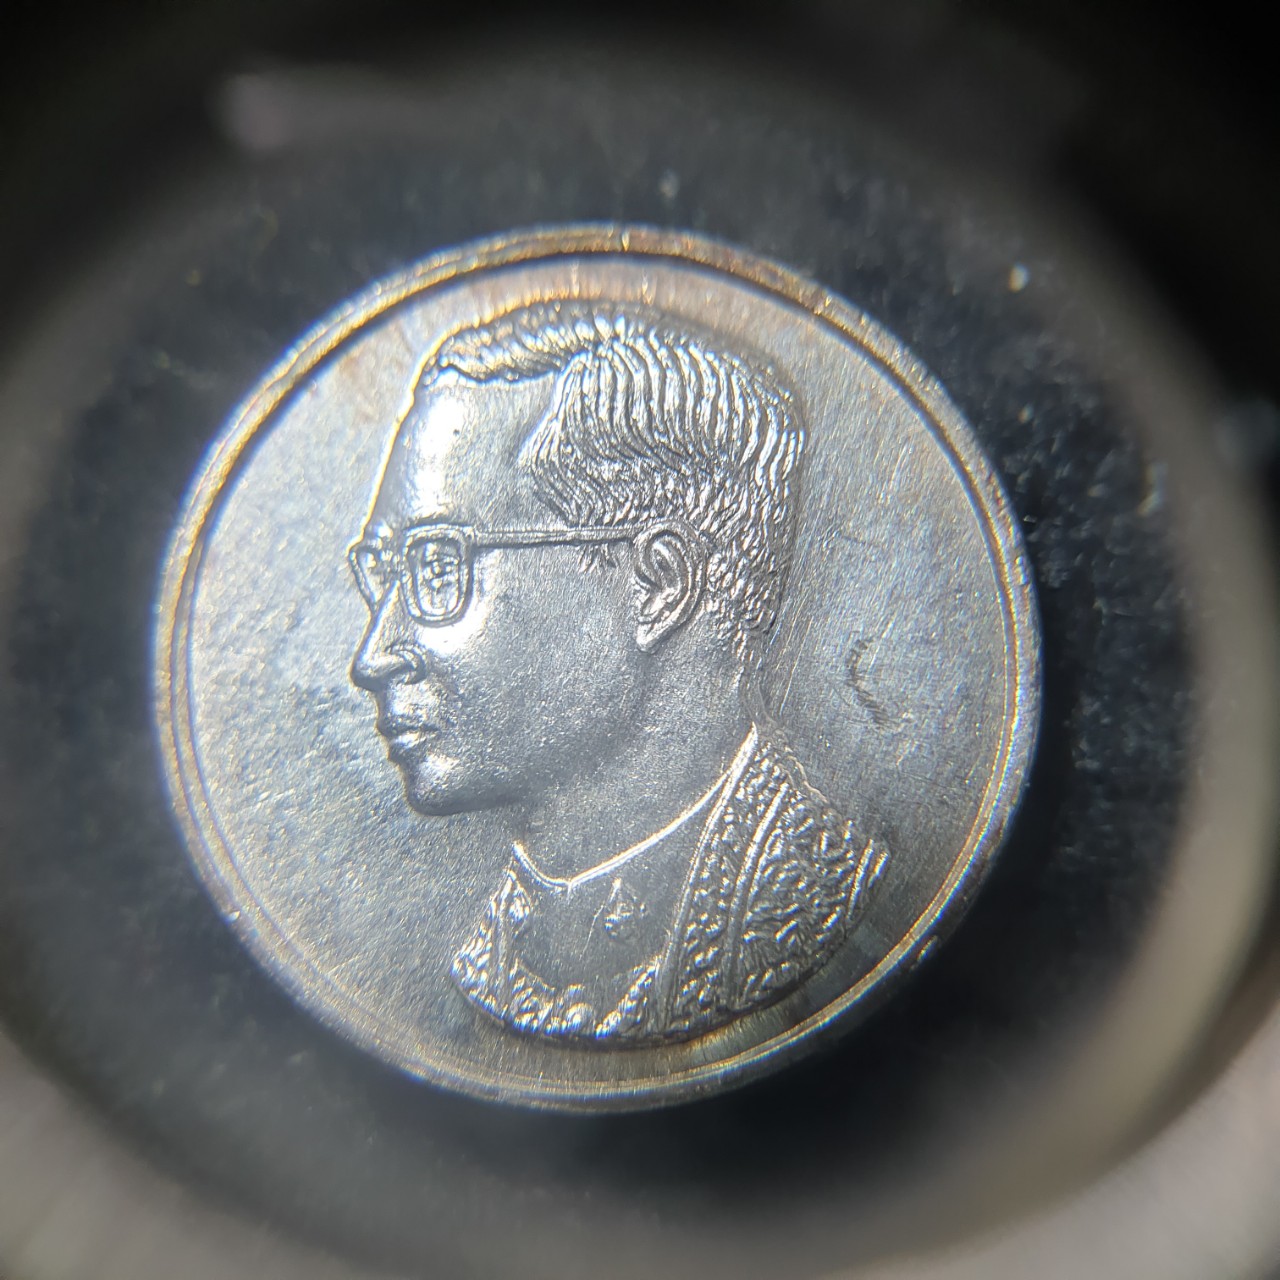 เหรียญคุ้มเกล้า เนื้oเงินพิมพ์เล็ก หลังมีตราสัญลักษณ์ ภ.ป.s. ปี 2522 พร้อมซองเดิม (สำเนา)